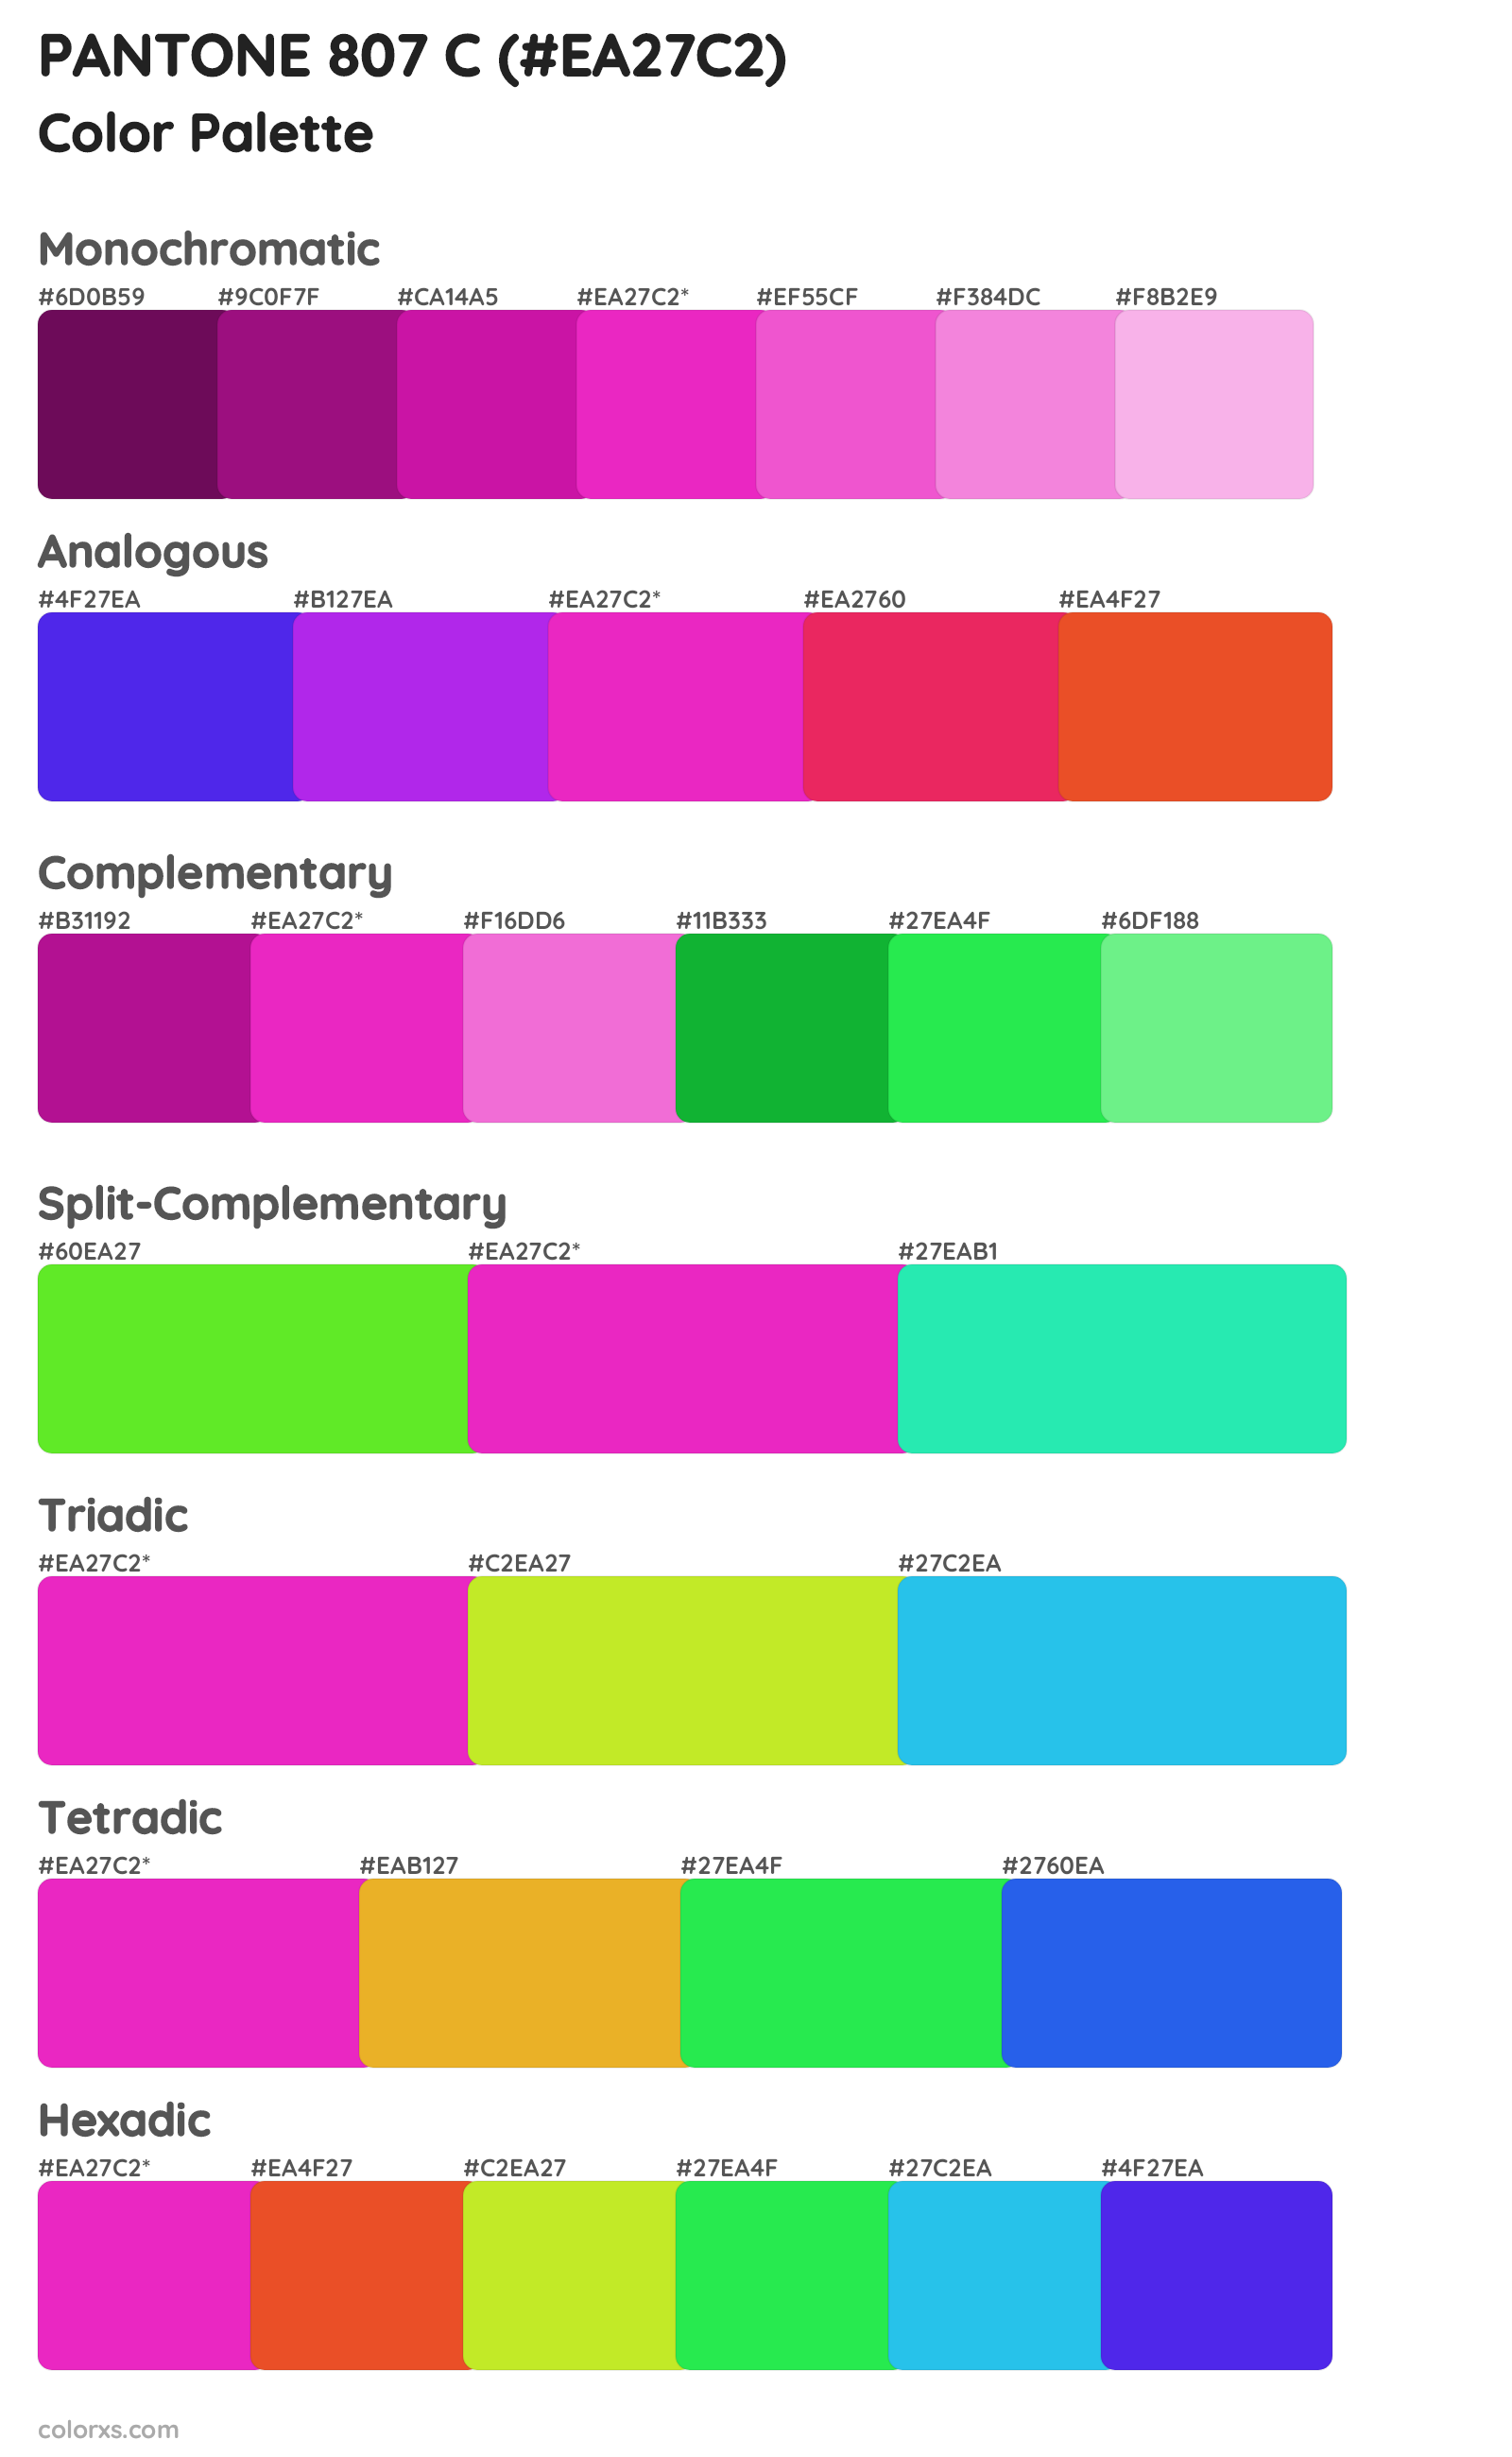 PANTONE 807 C Color Scheme Palettes